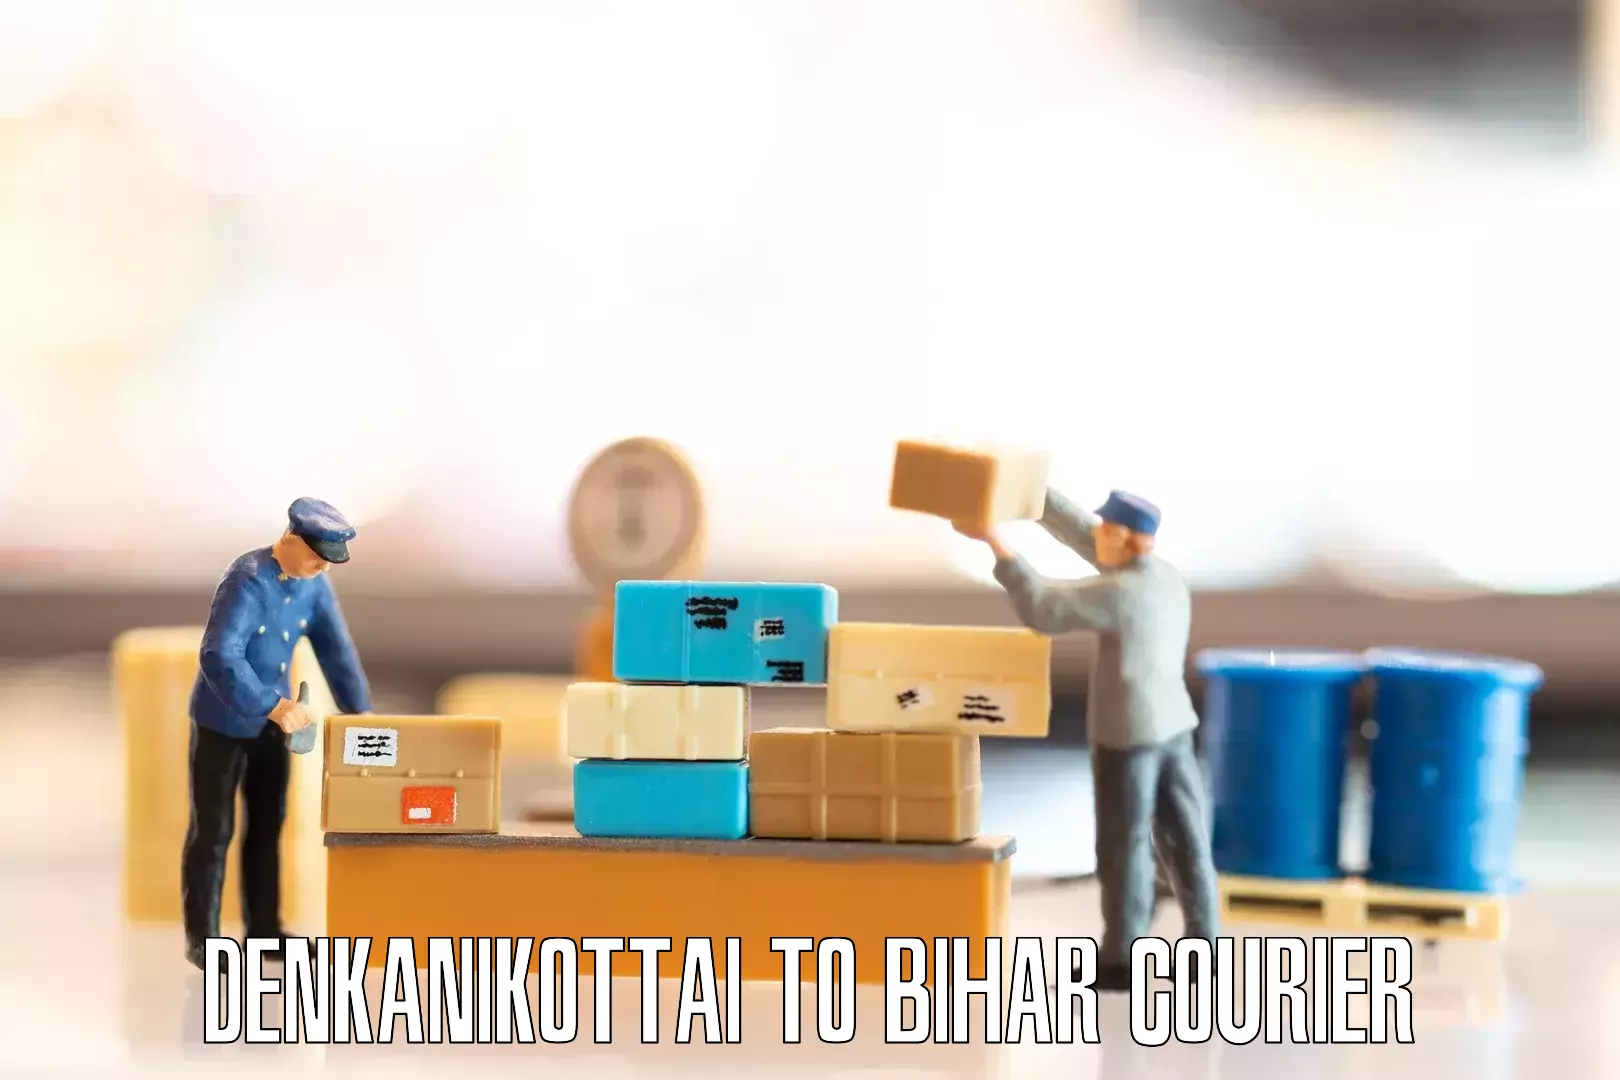 Furniture transport and storage Denkanikottai to IIIT Bhagalpur